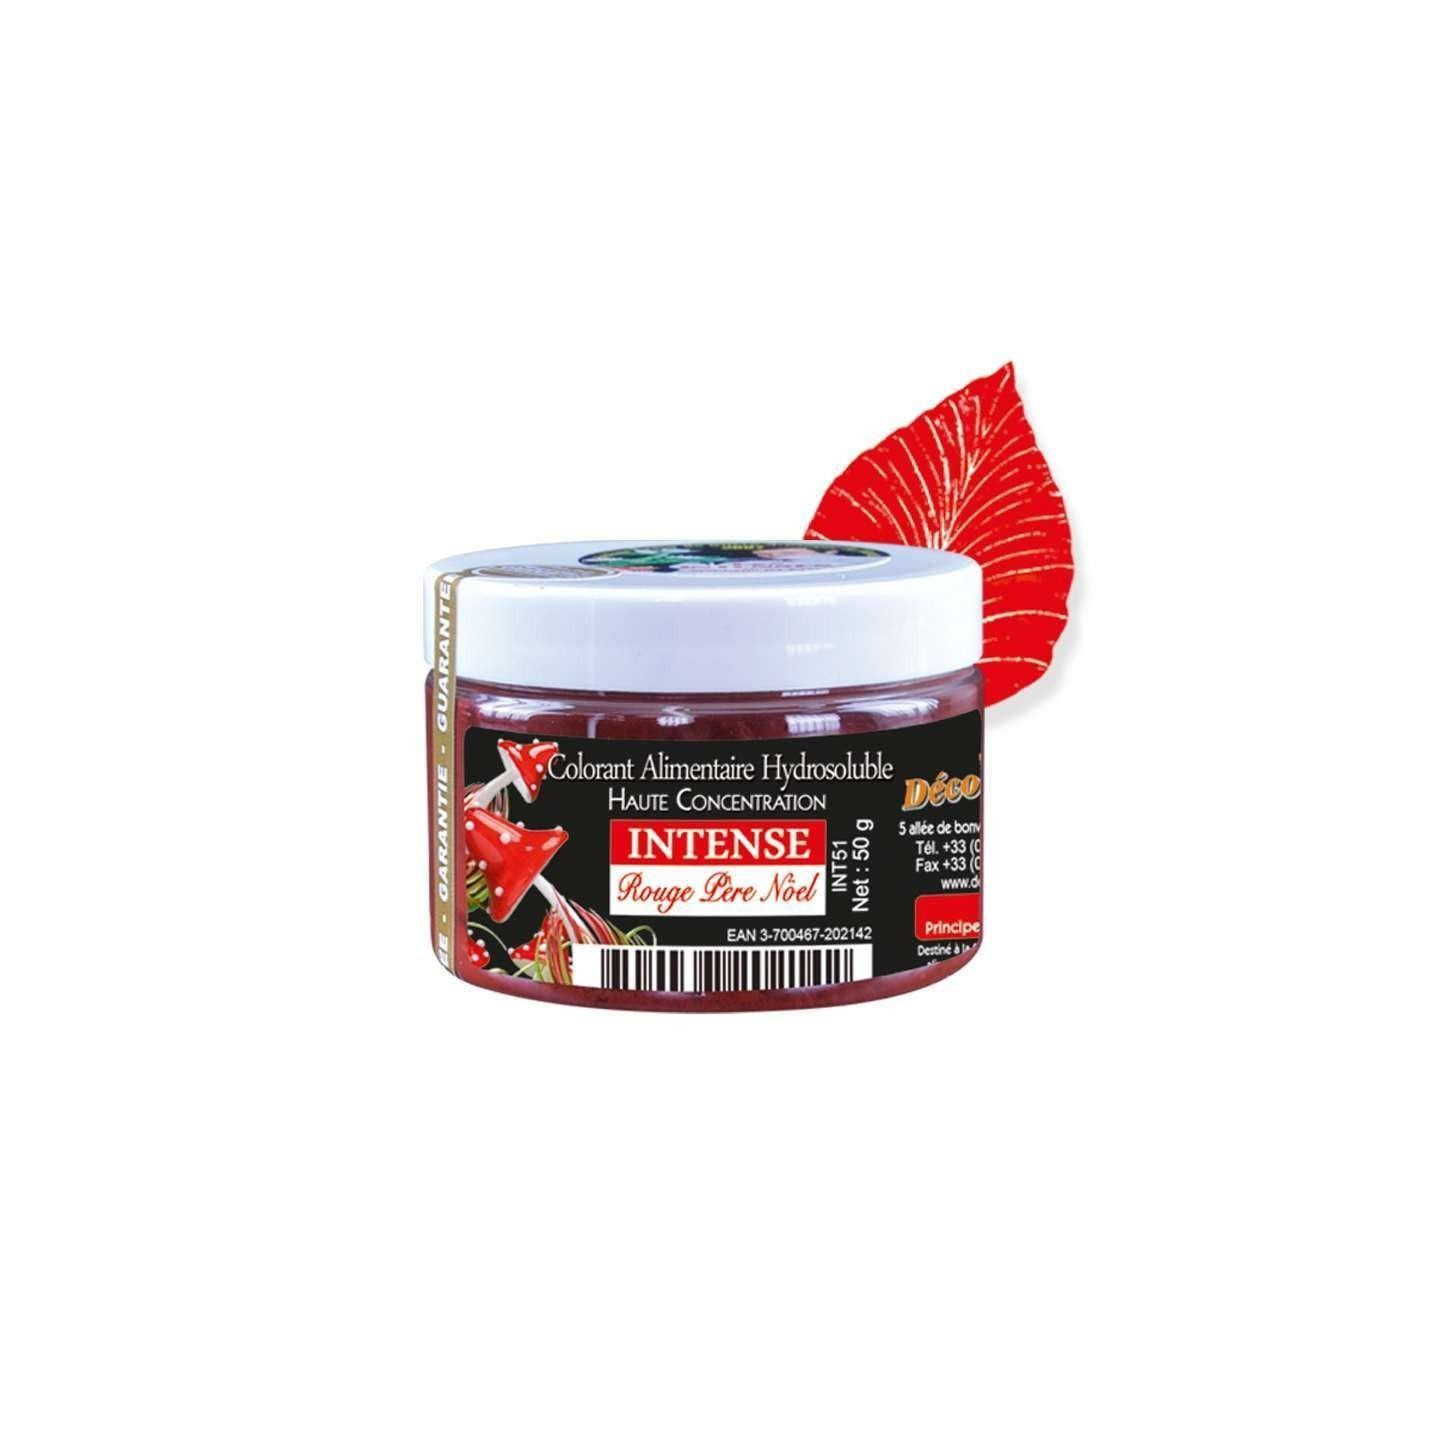 Colorant alimentaire en poudre hydrosoluble couleur rouge Père Noël intense  - Pot de 50g